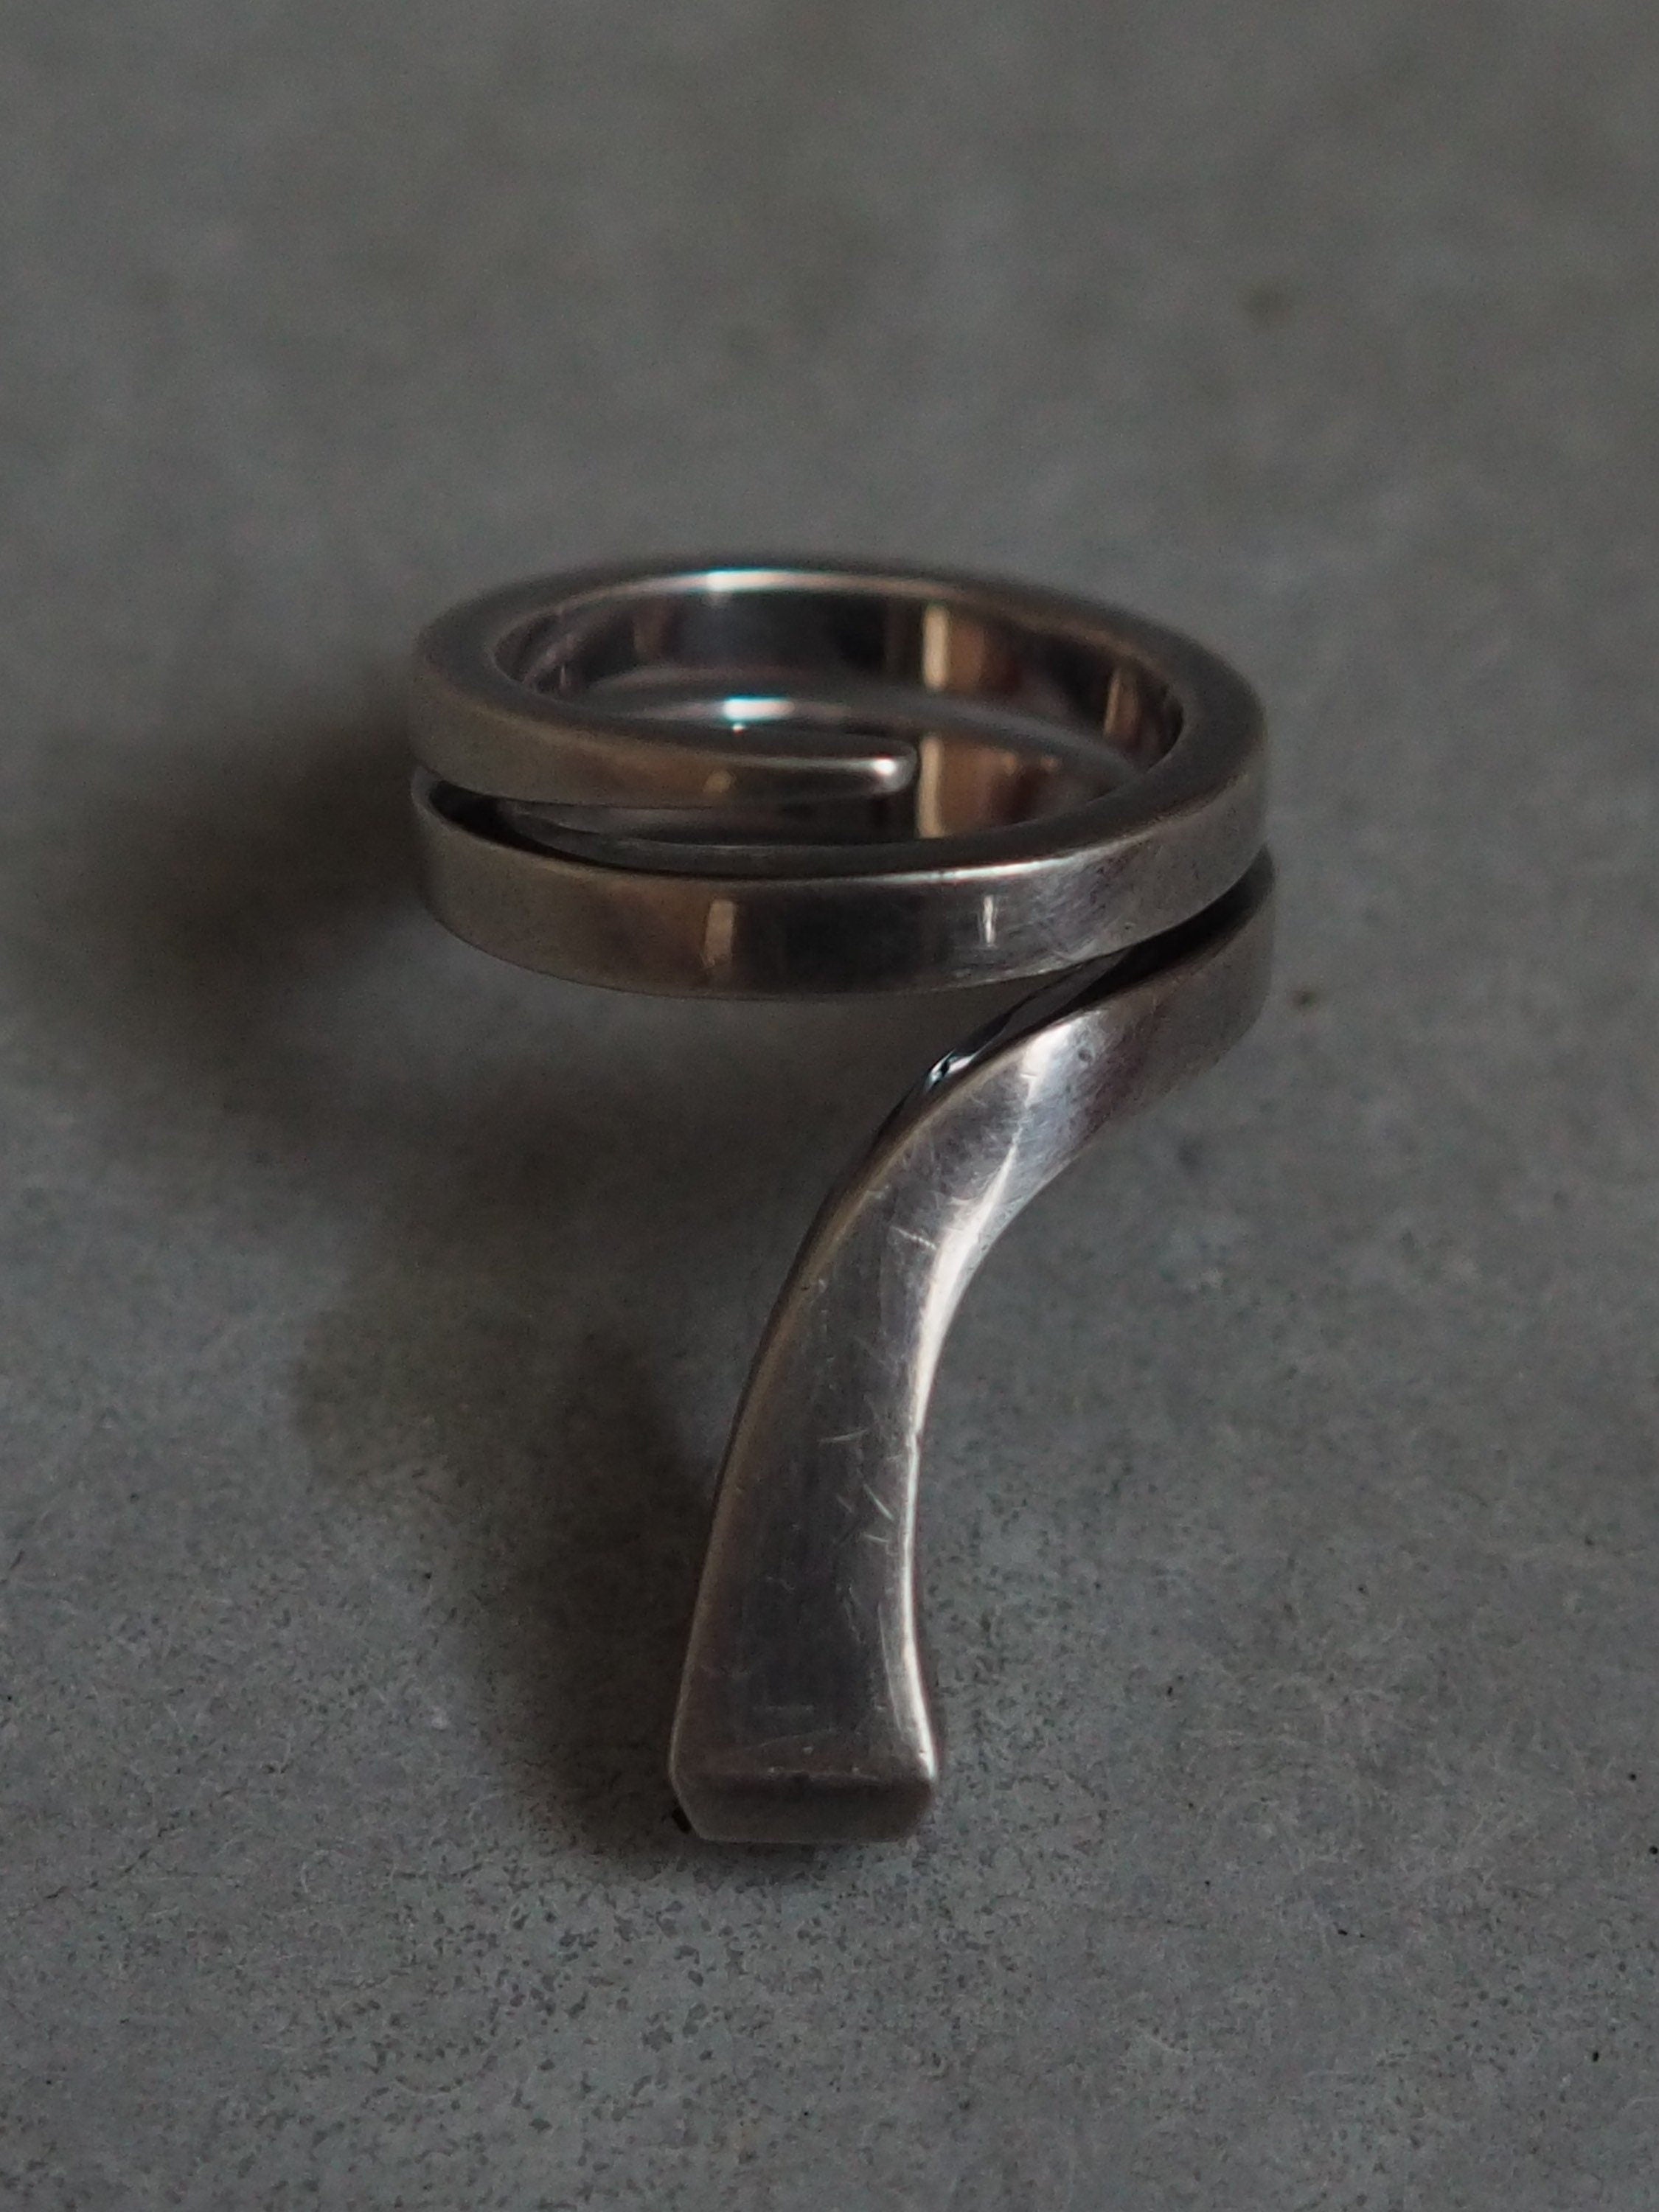 HERMES Clou de forge Ring SV 925 Silver size (US) 6.0 Vintage Authentic